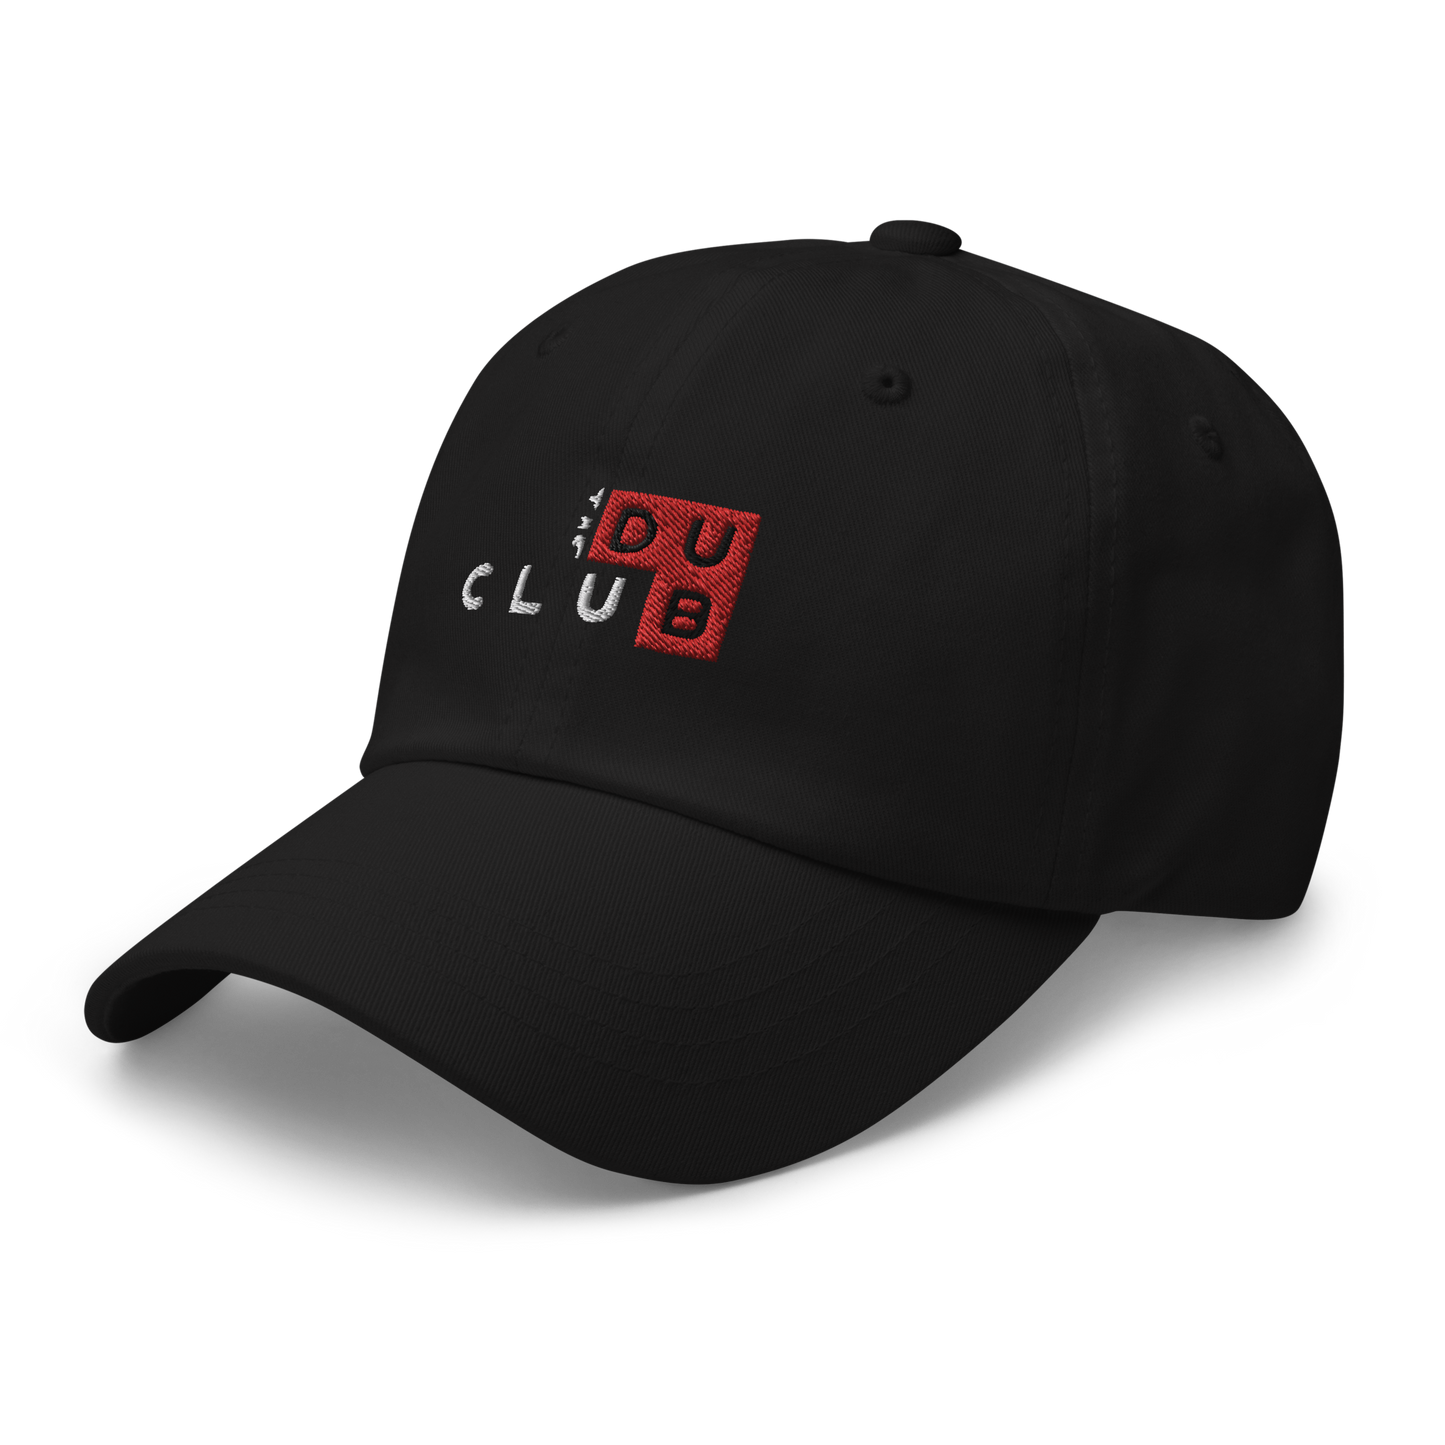 Dub Club Dad Hat